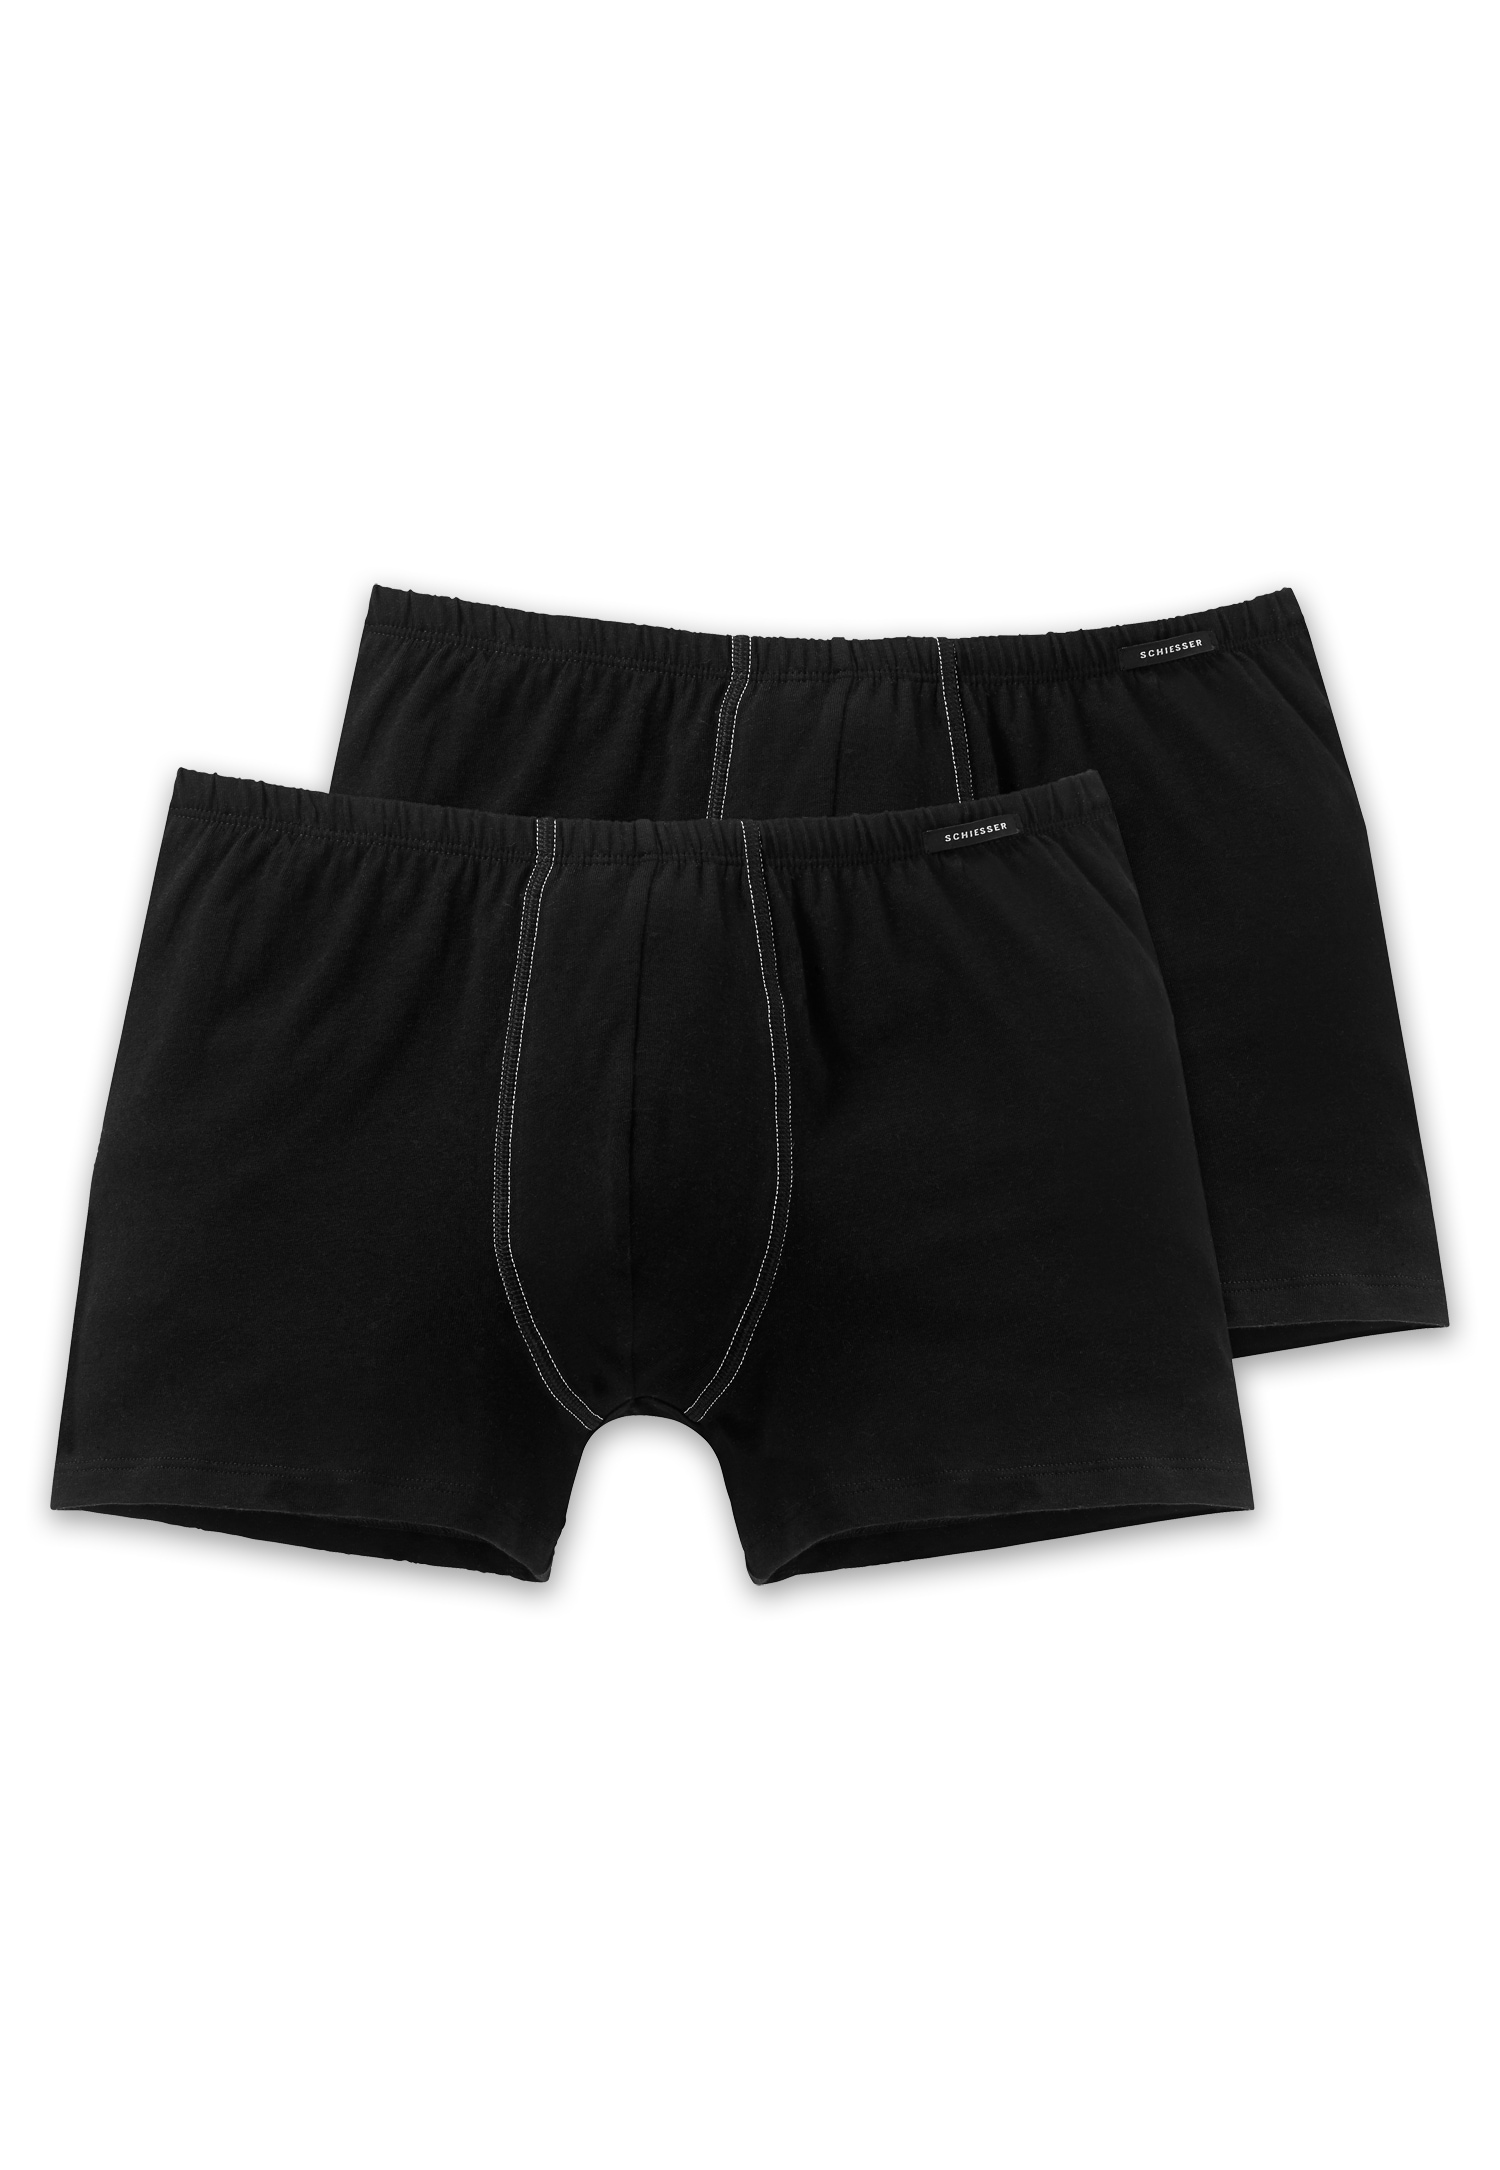 Schiesser Herren (2er Pack) Shorts Unterhose mit weichem Bündchen, (schwarz 000), Small